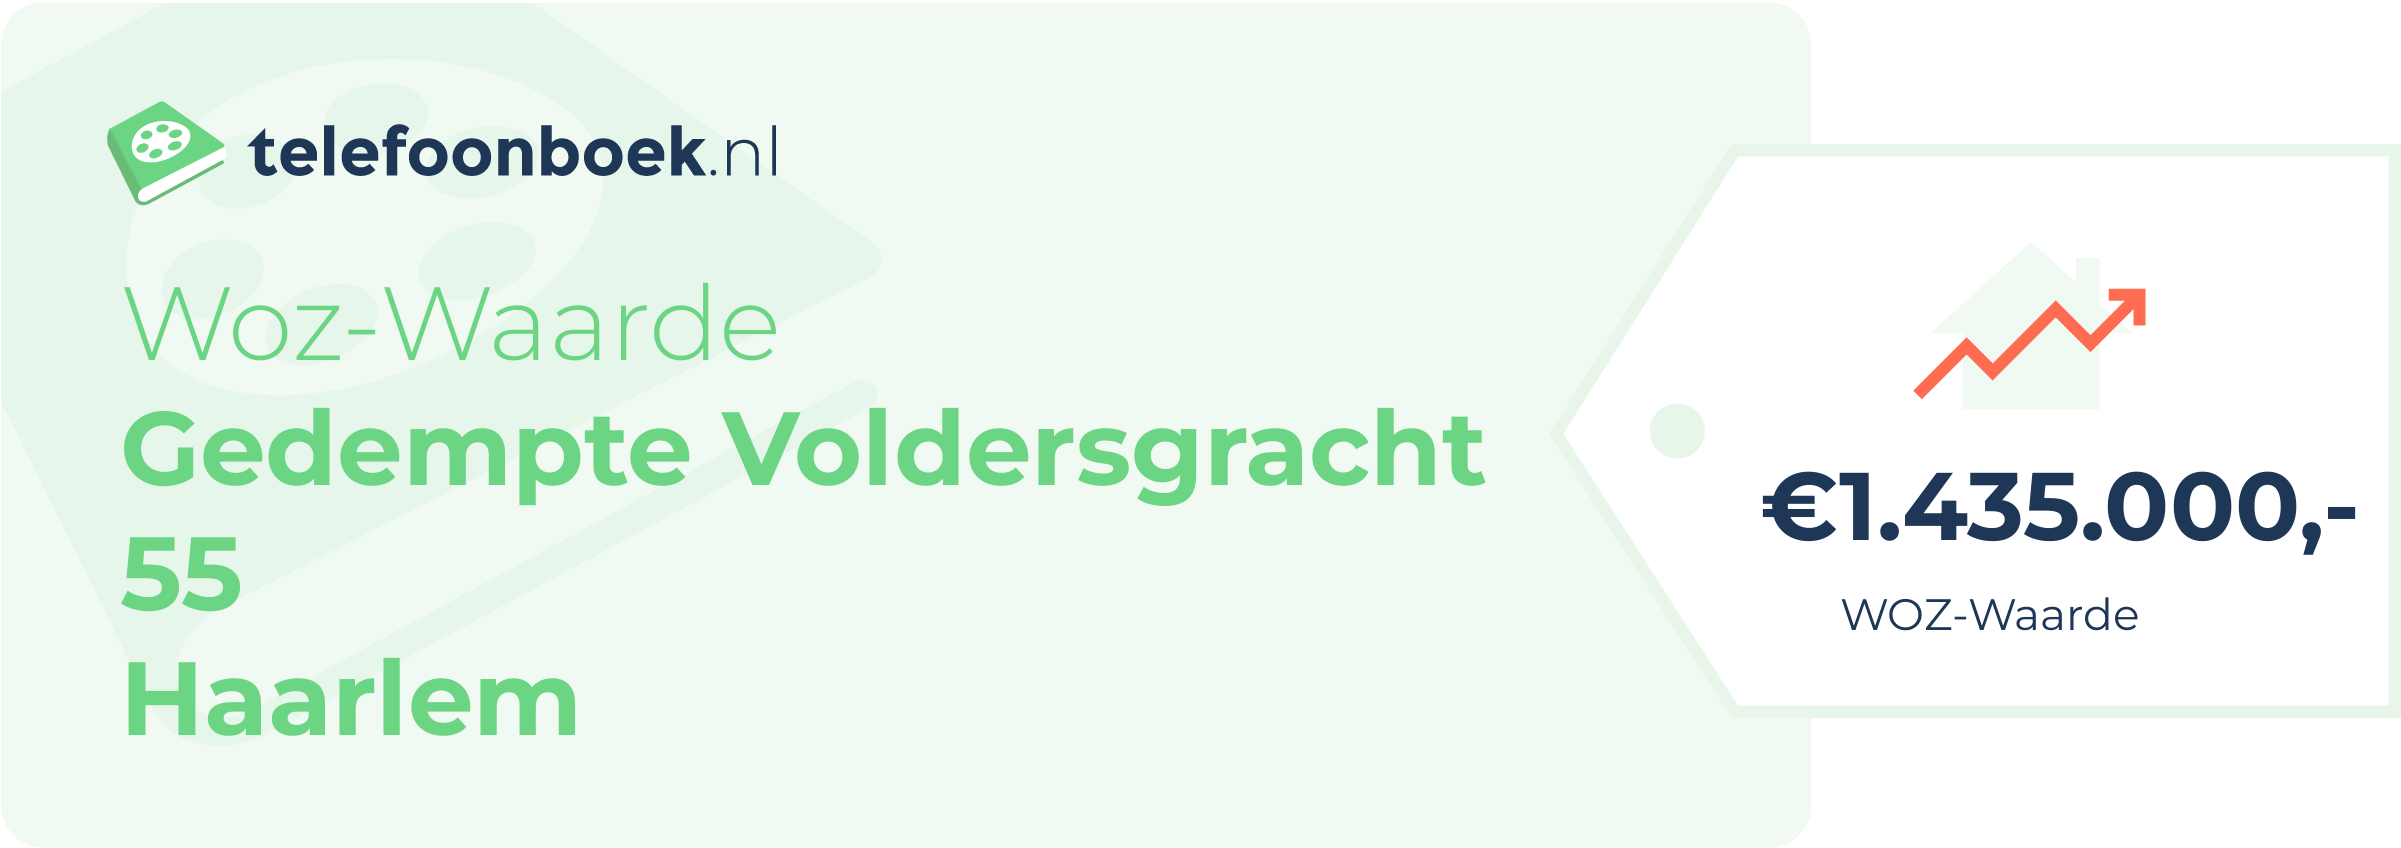 WOZ-waarde Gedempte Voldersgracht 55 Haarlem